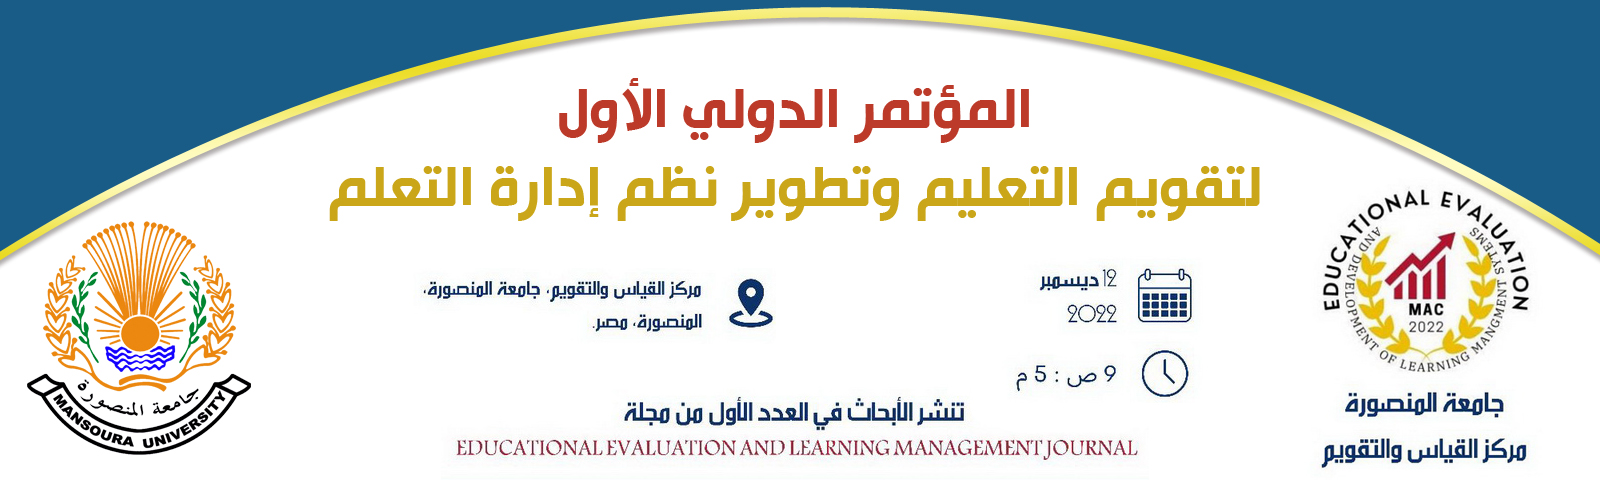 جدول أعمال المؤتمر الدولى الأول لتقويم التعليم وتطوير نظم إدارة التعلم